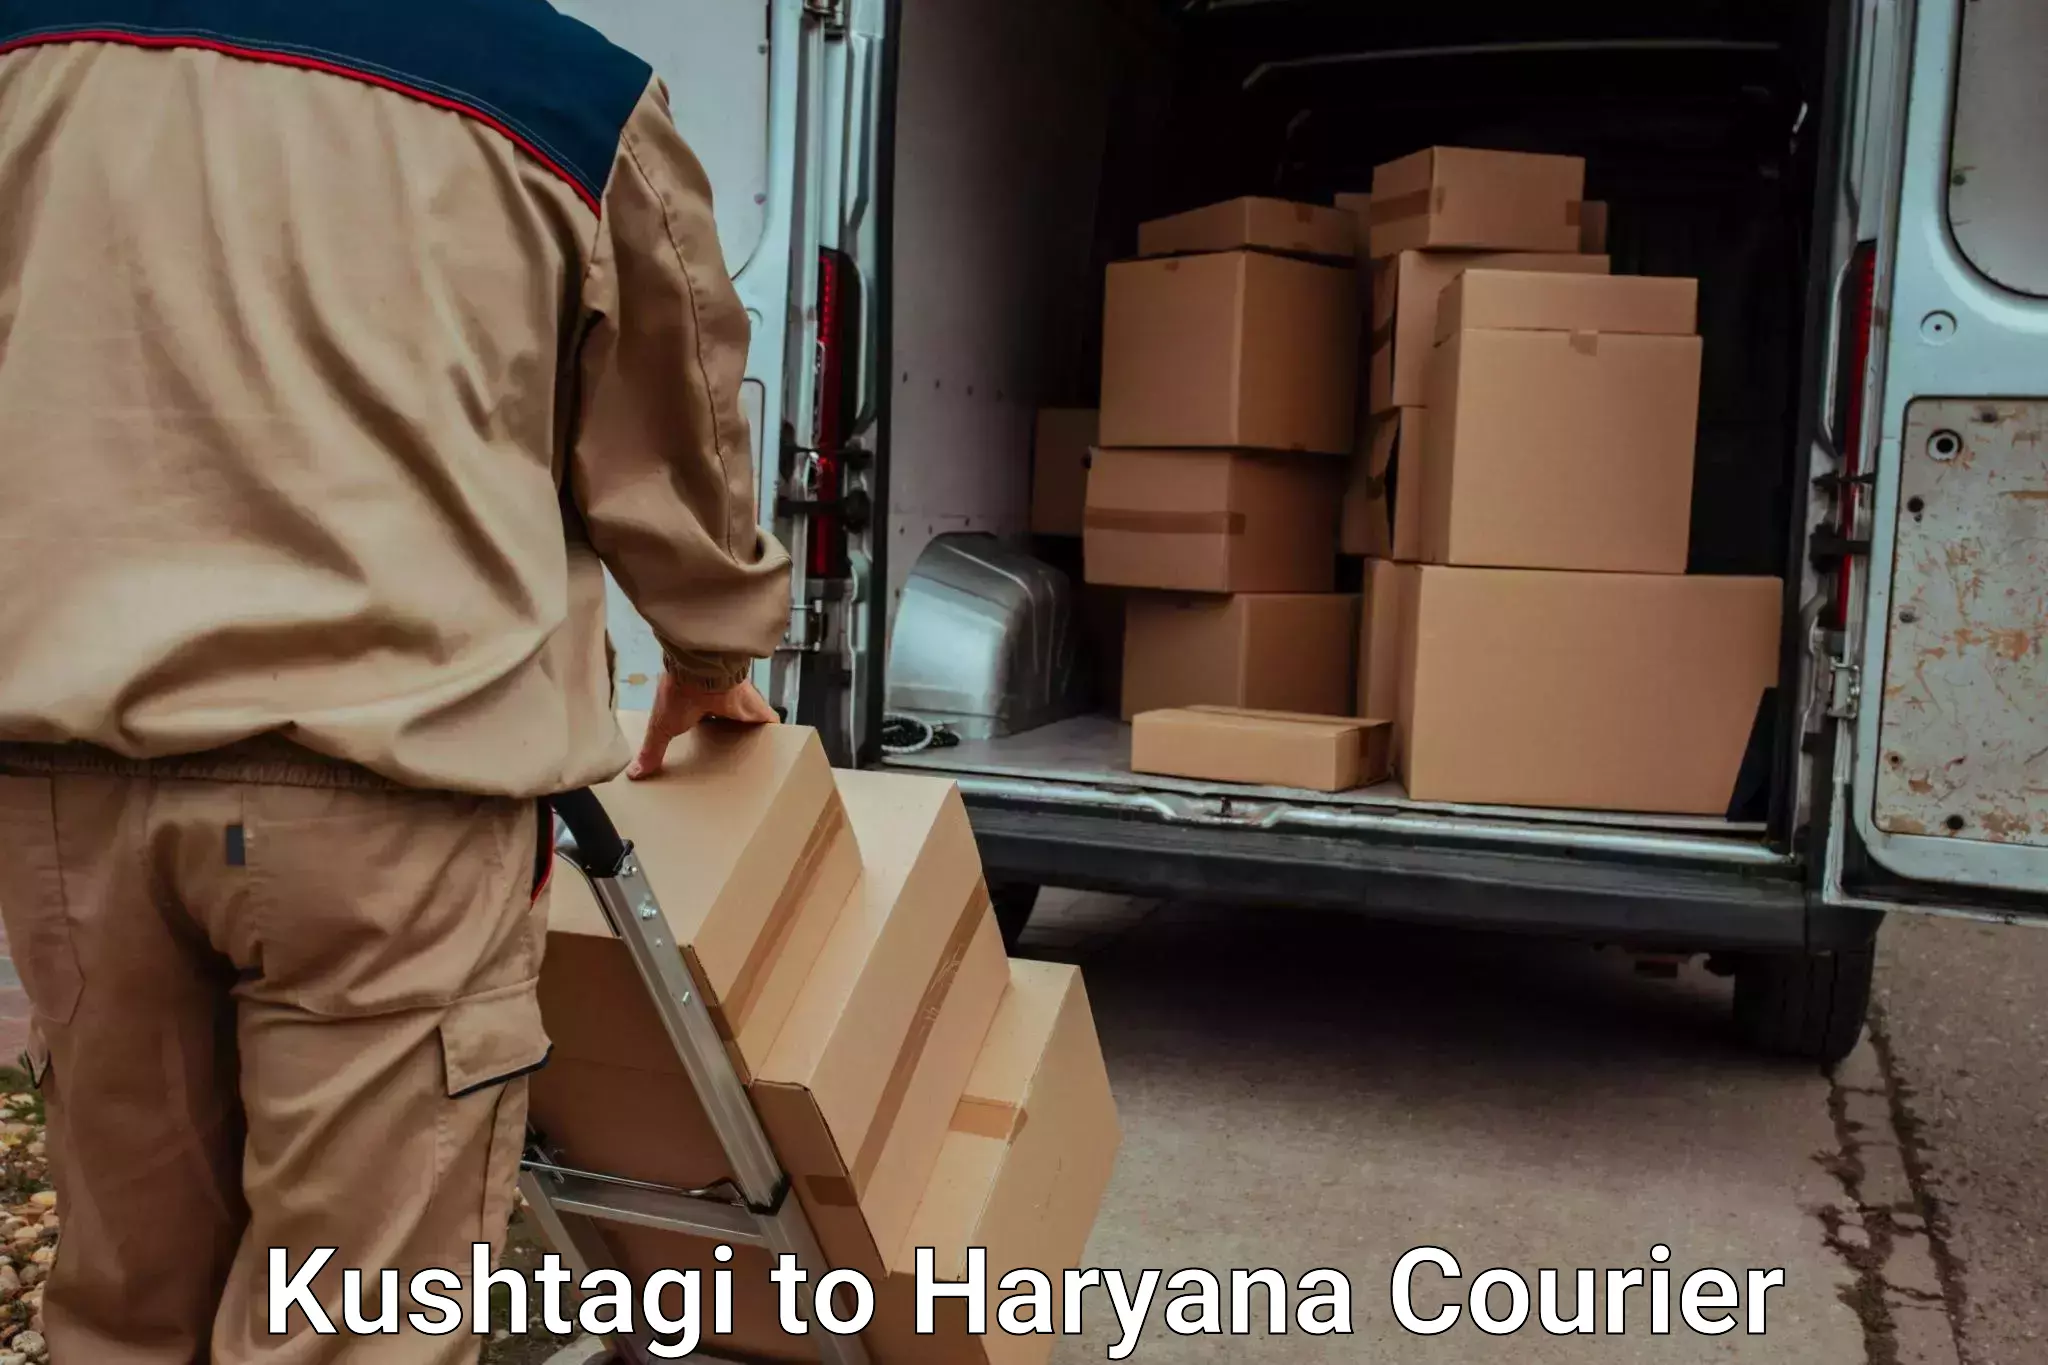 Luggage transport solutions Kushtagi to Mandi Dabwali